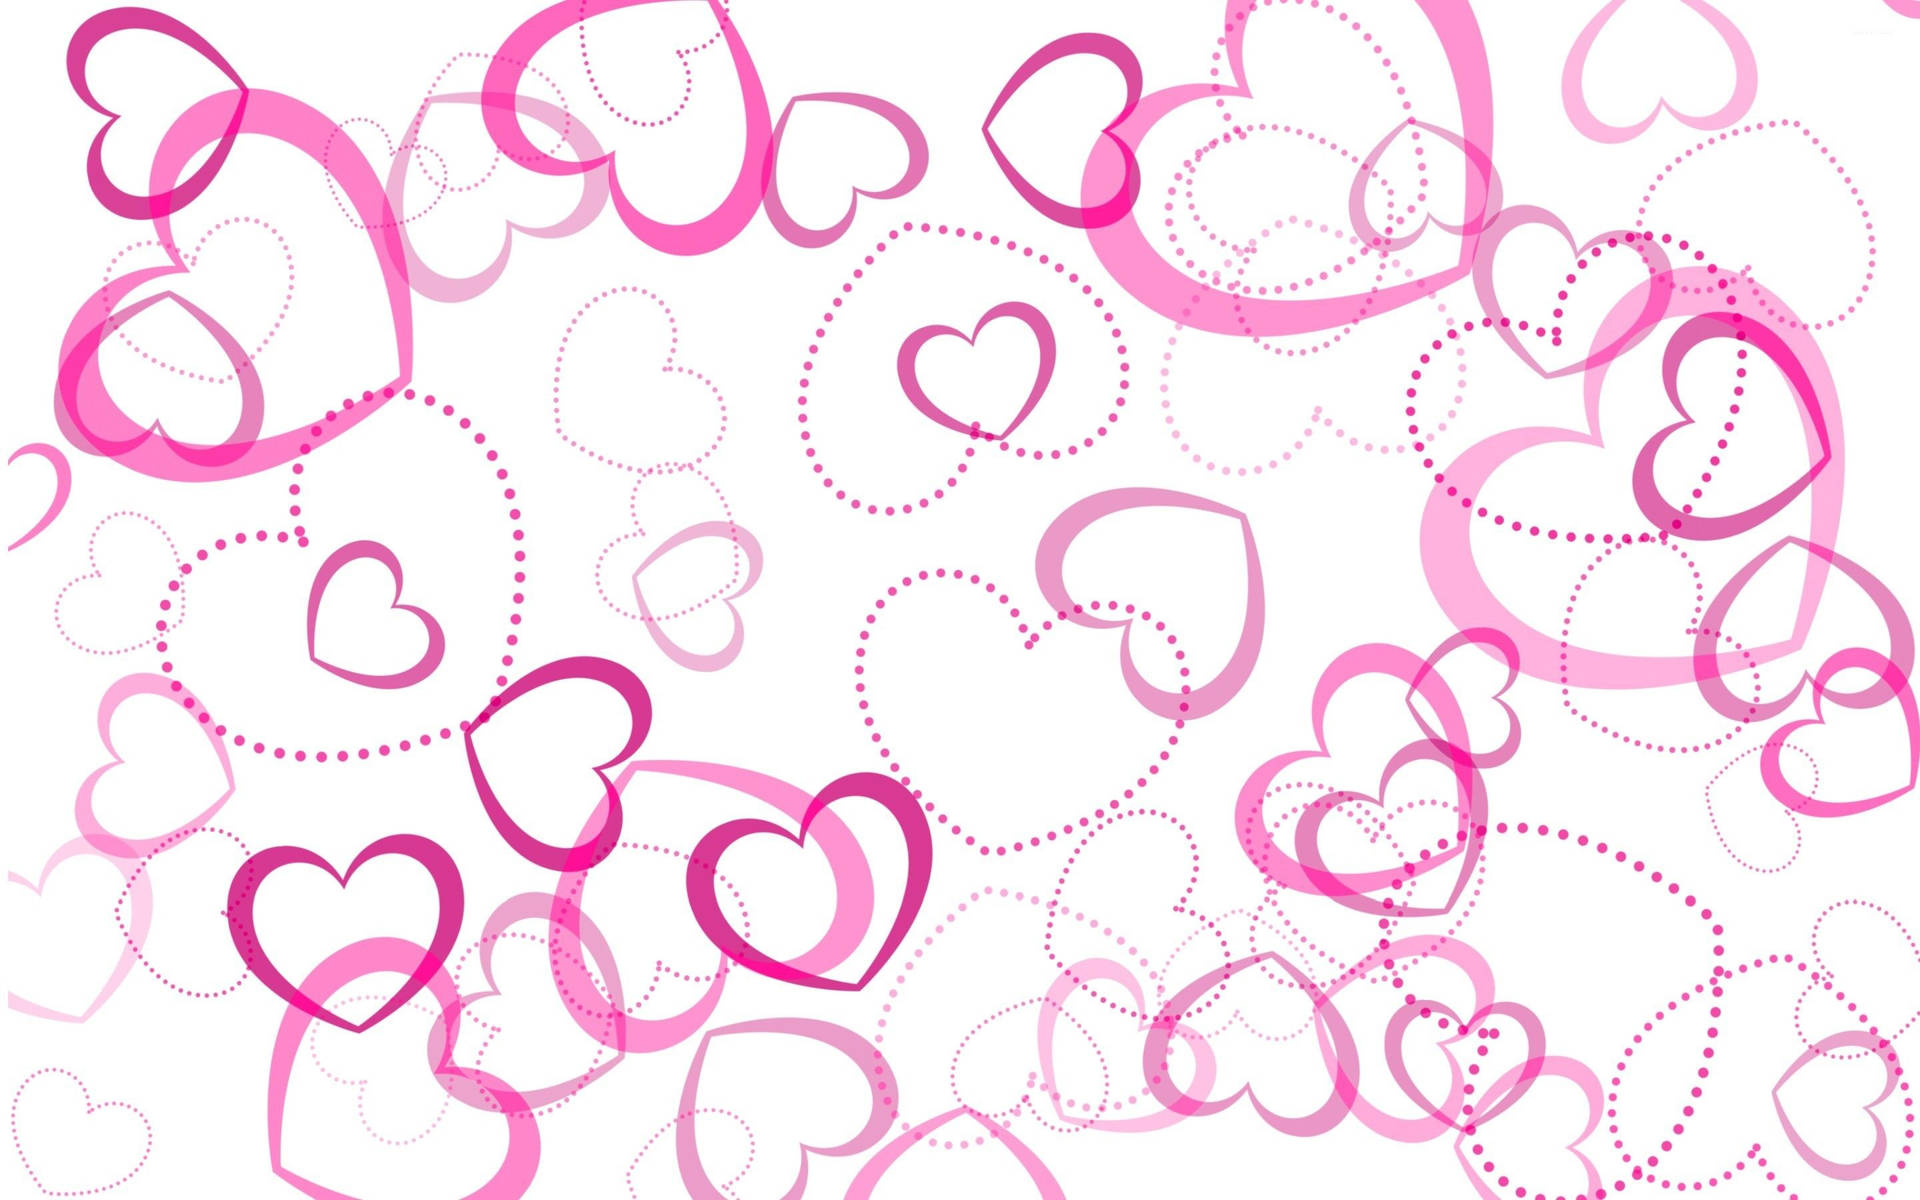 50+] 3D Moving Hearts Desktop Wallpaper - WallpaperSafari